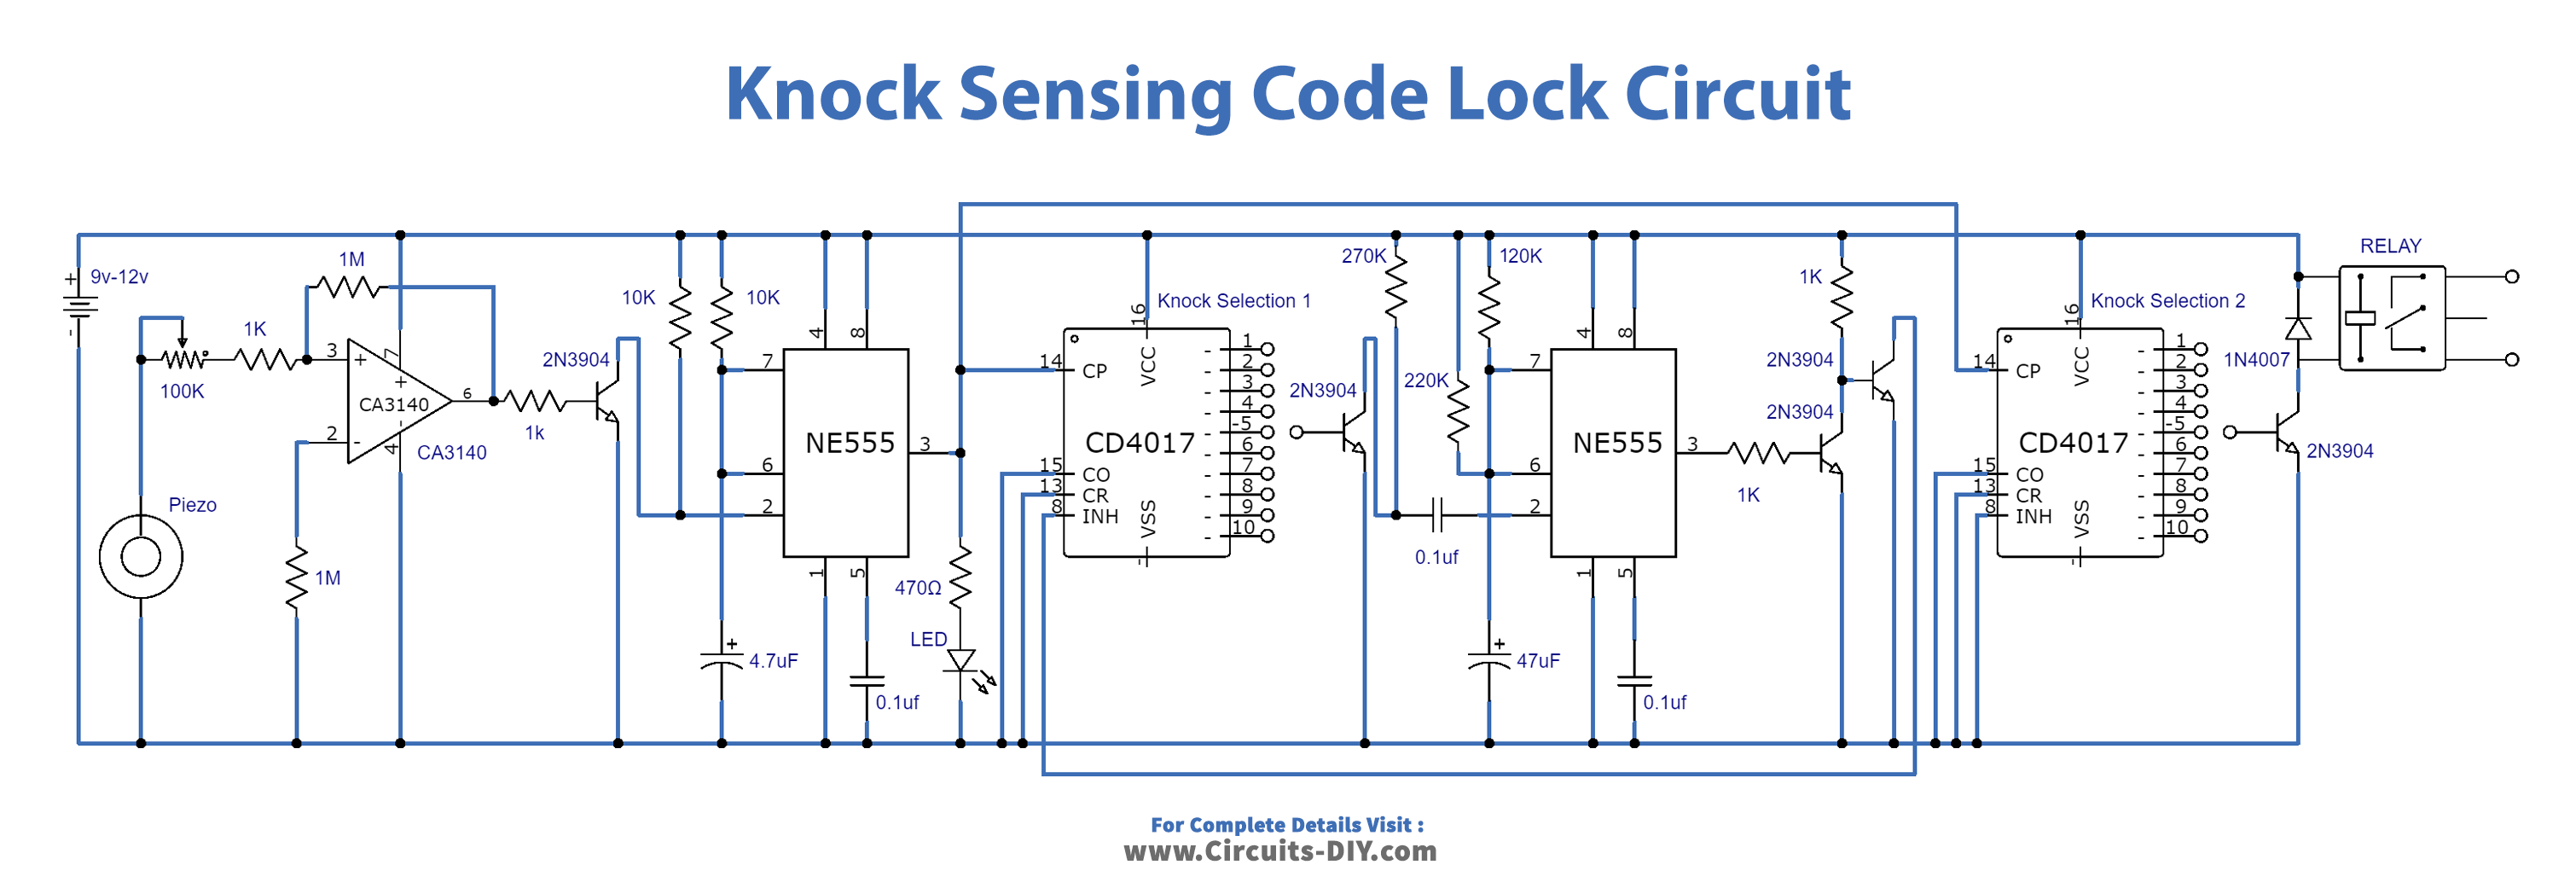 Knock Sensing Code Lock Circuit N